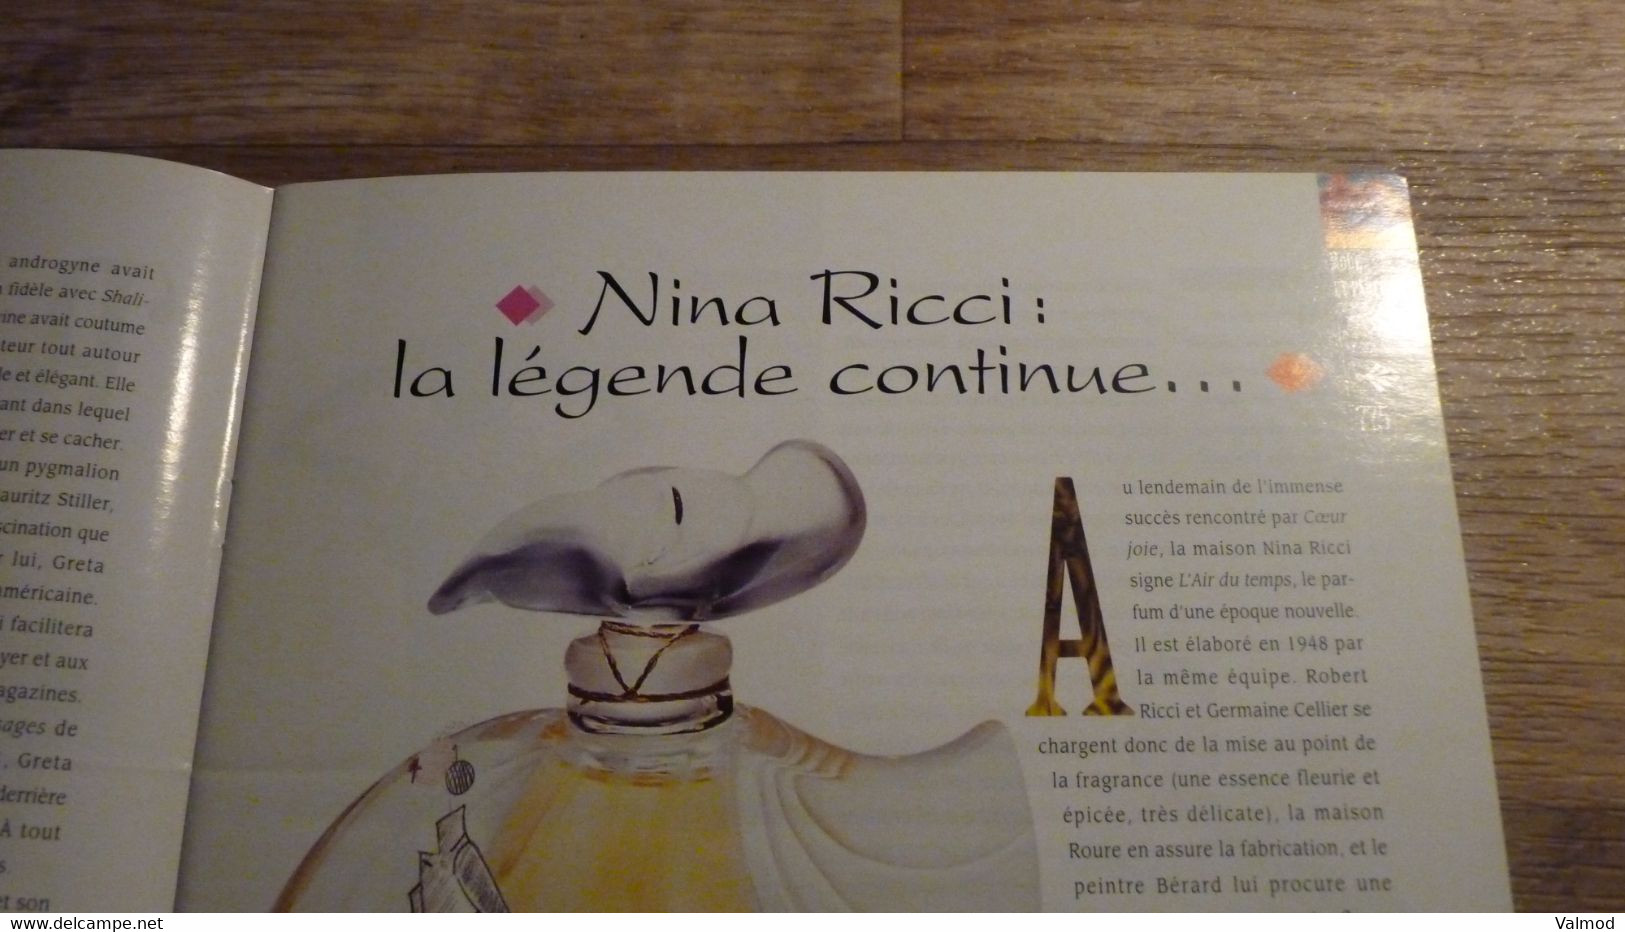 Magazine "Parfums de Rêve" N° 65 - Loreste "Blue Dream" - Editions Atlas